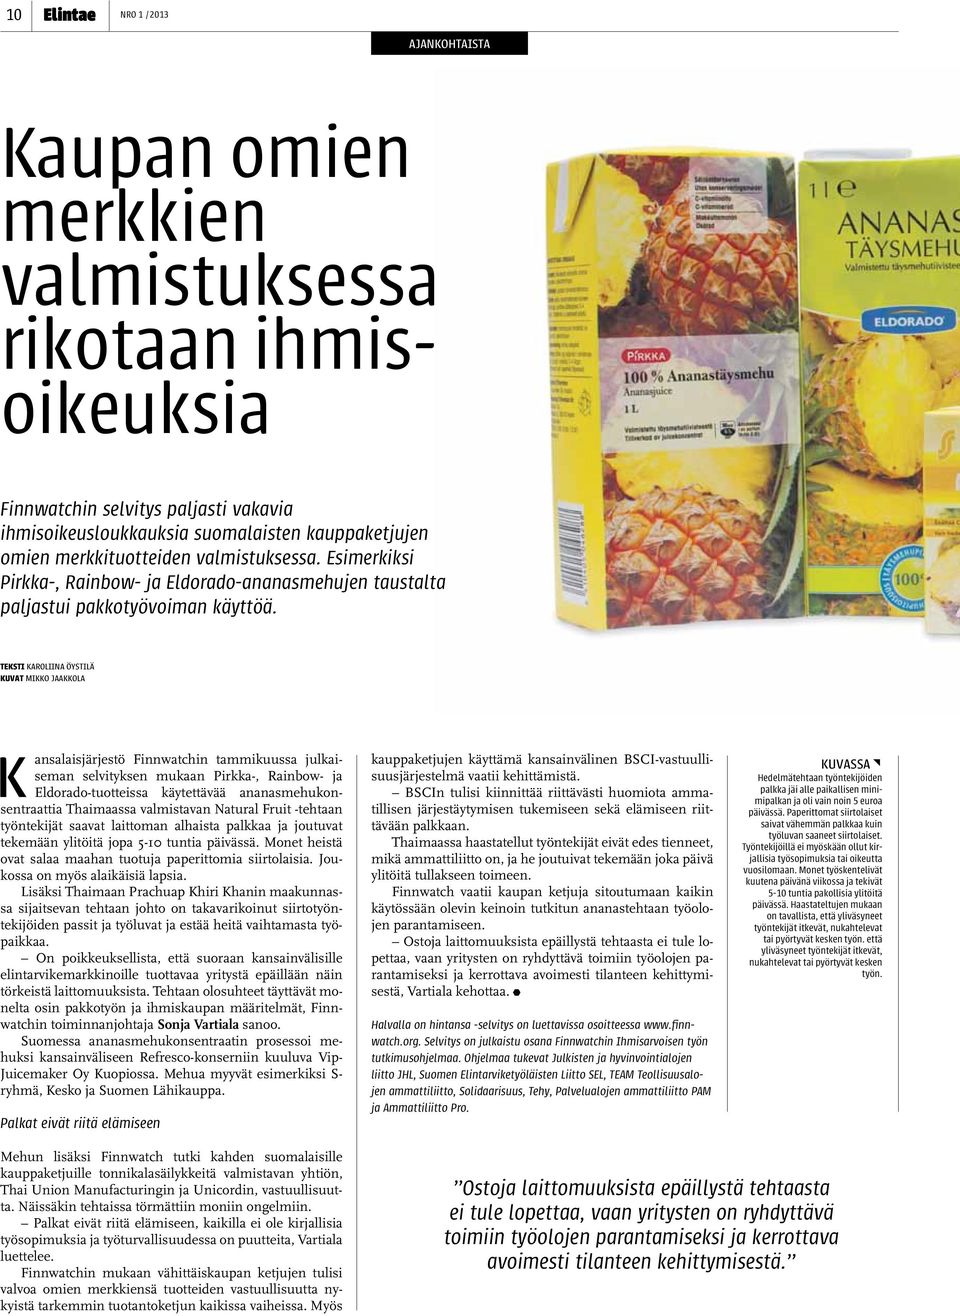 teksti karoliina öystilä kuvat mikko jaakkola ansalaisjärjestö Finnwatchin tammikuussa julkaiseman selvityksen mukaan Pirkka-, Rainbow- ja Eldorado-tuotteissa käytettävää ananasmehukonsentraattia